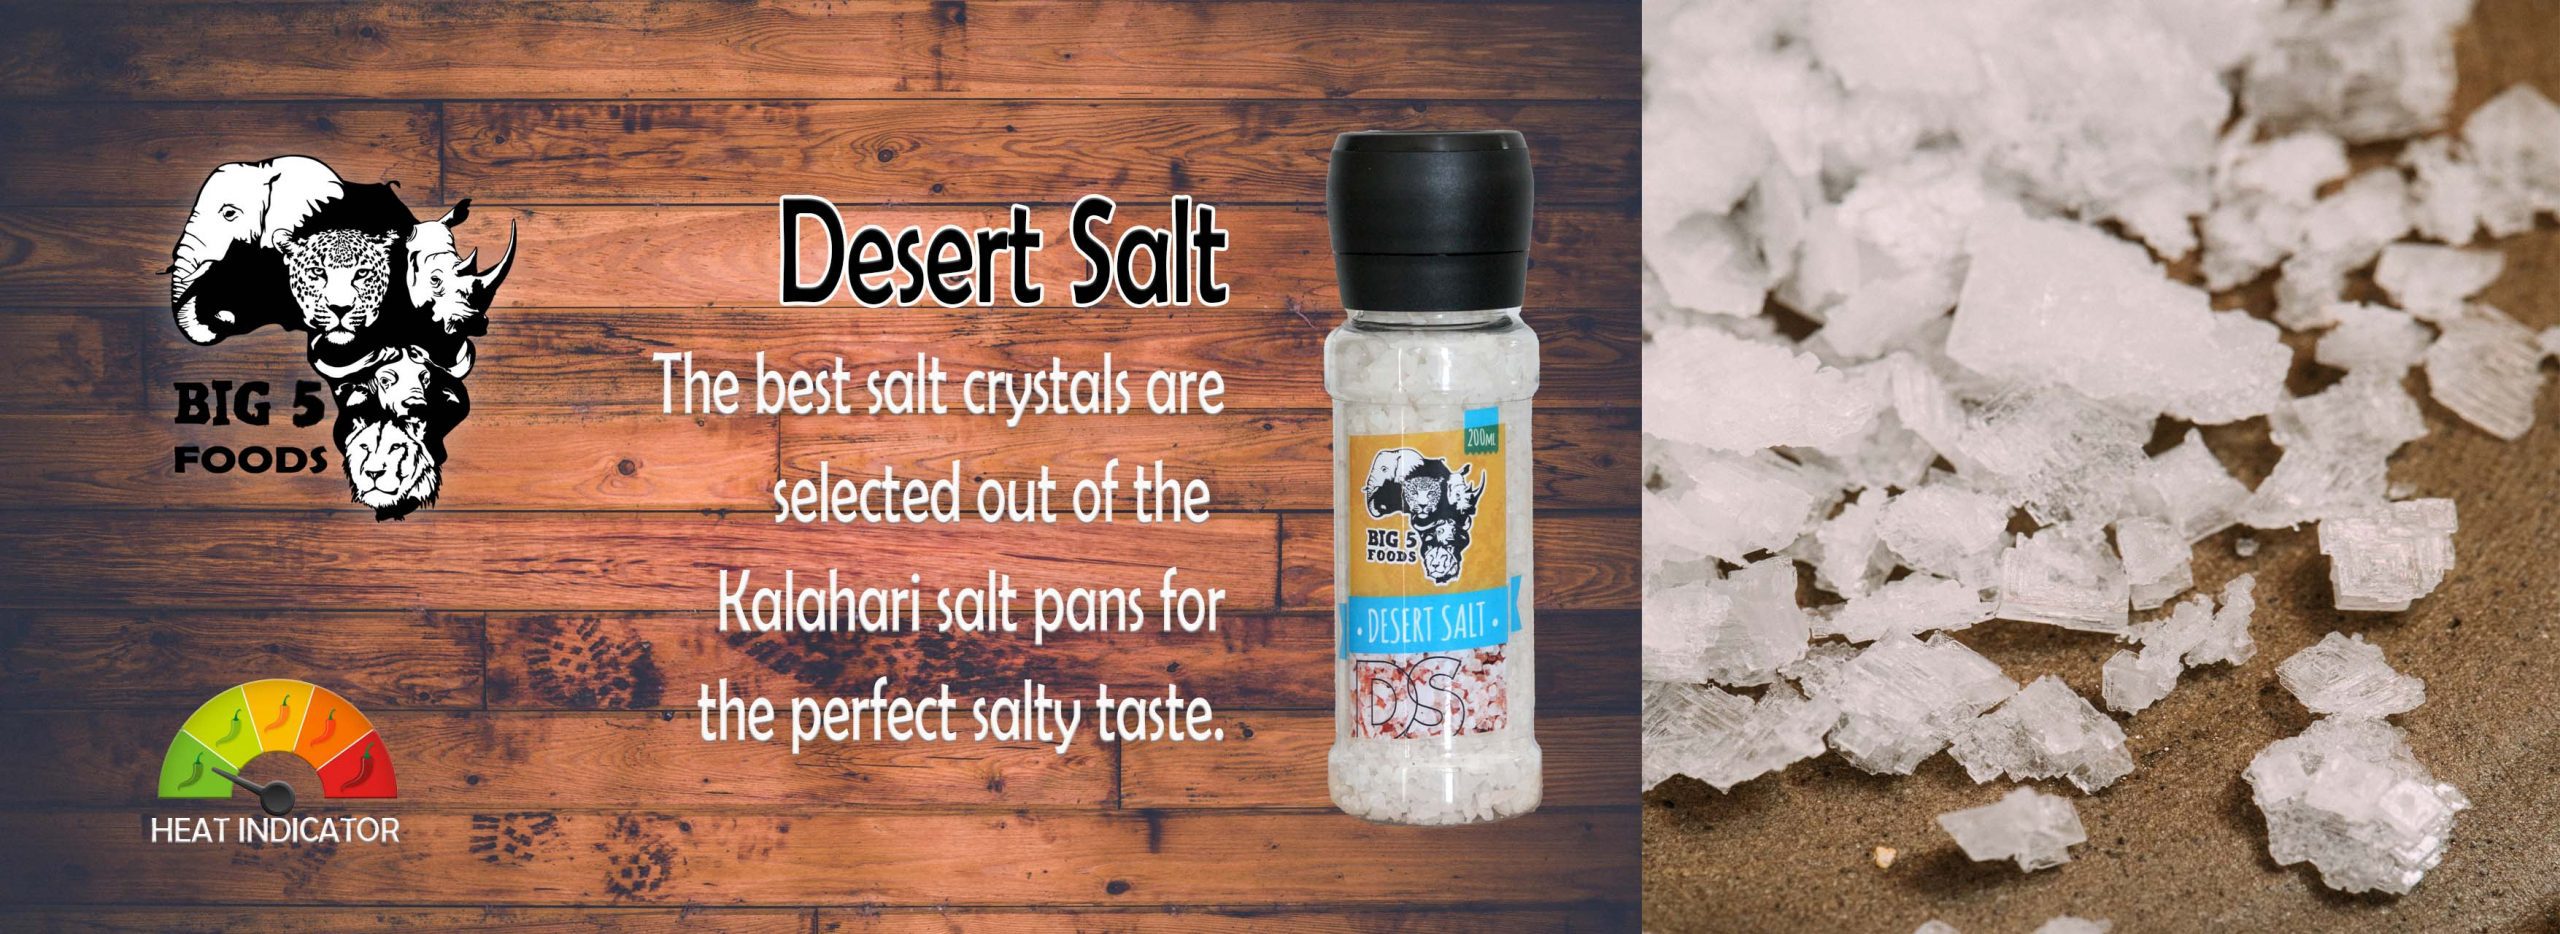 Big 5 Desert Salt